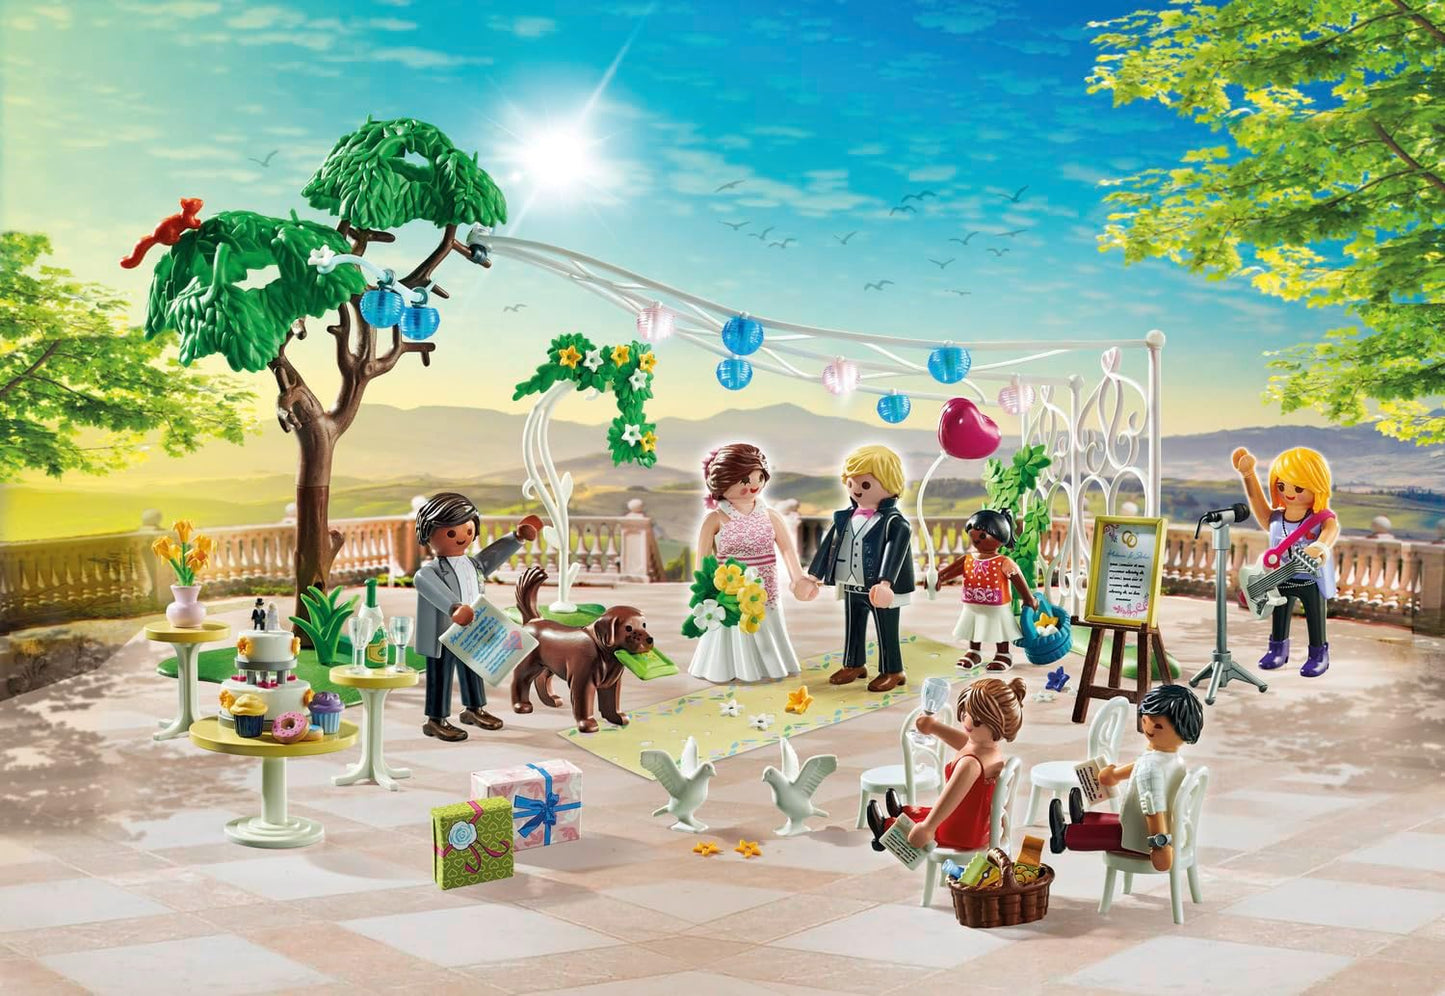 Playmobil  71365 Pacote promocional de recepção de casamento City Life, casamento romântico para encenar, com decorações e vários convidados e animais, dramatização cerimonial, conjunto de brinquedos adequado para crianças a partir de 4 anos